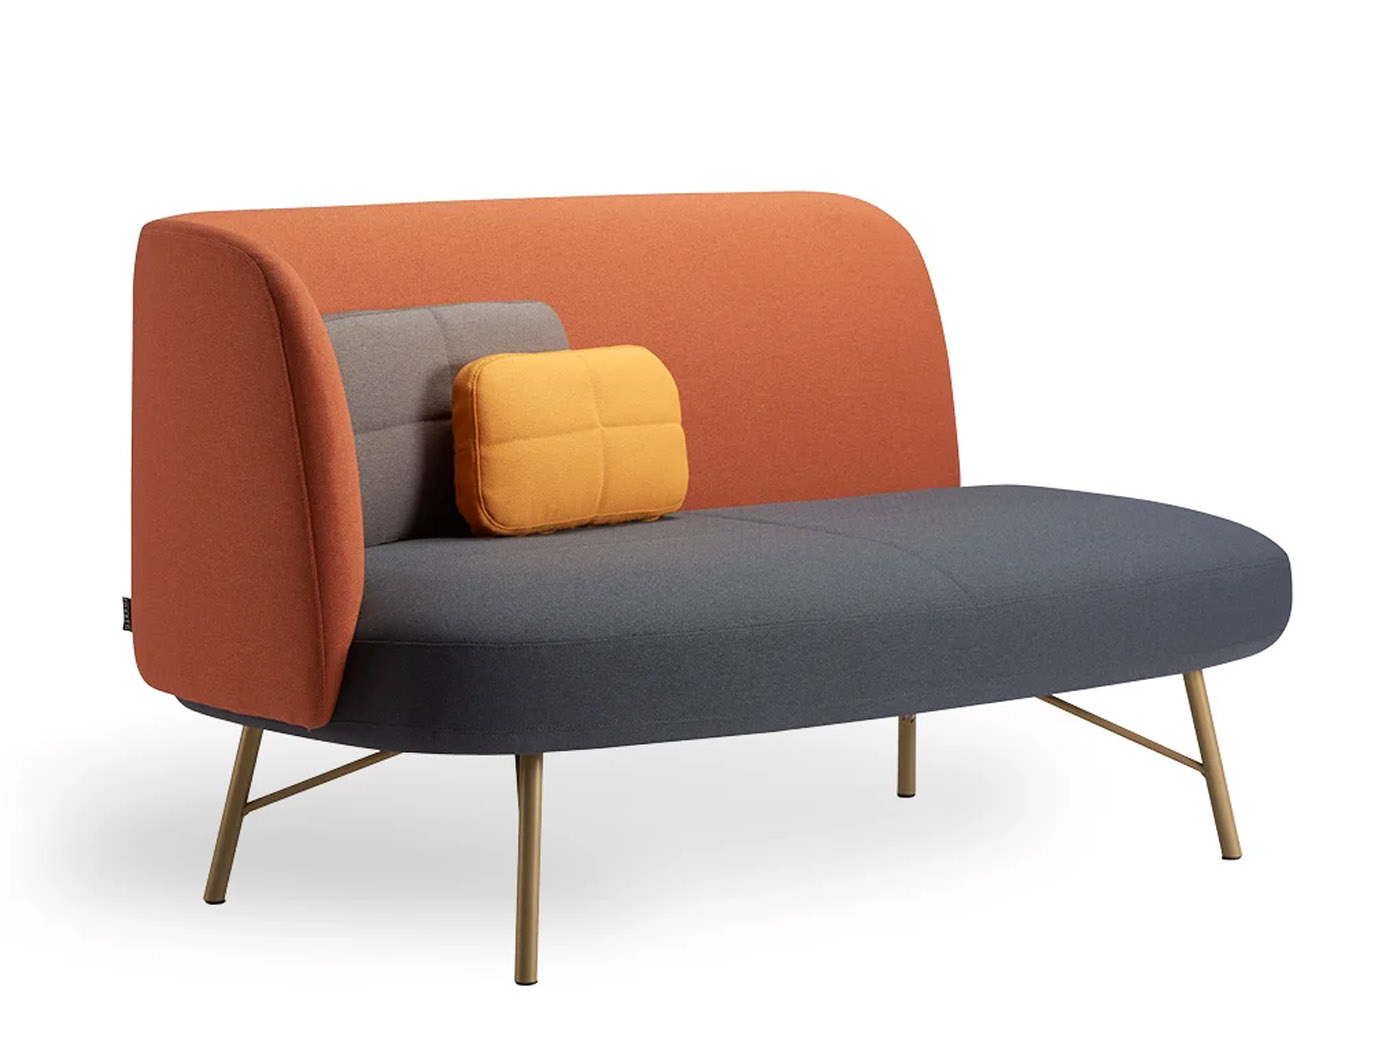 German Design Award 2023: Rossin riceve una menzione speciale per la chaise longue elba di JOI-Design